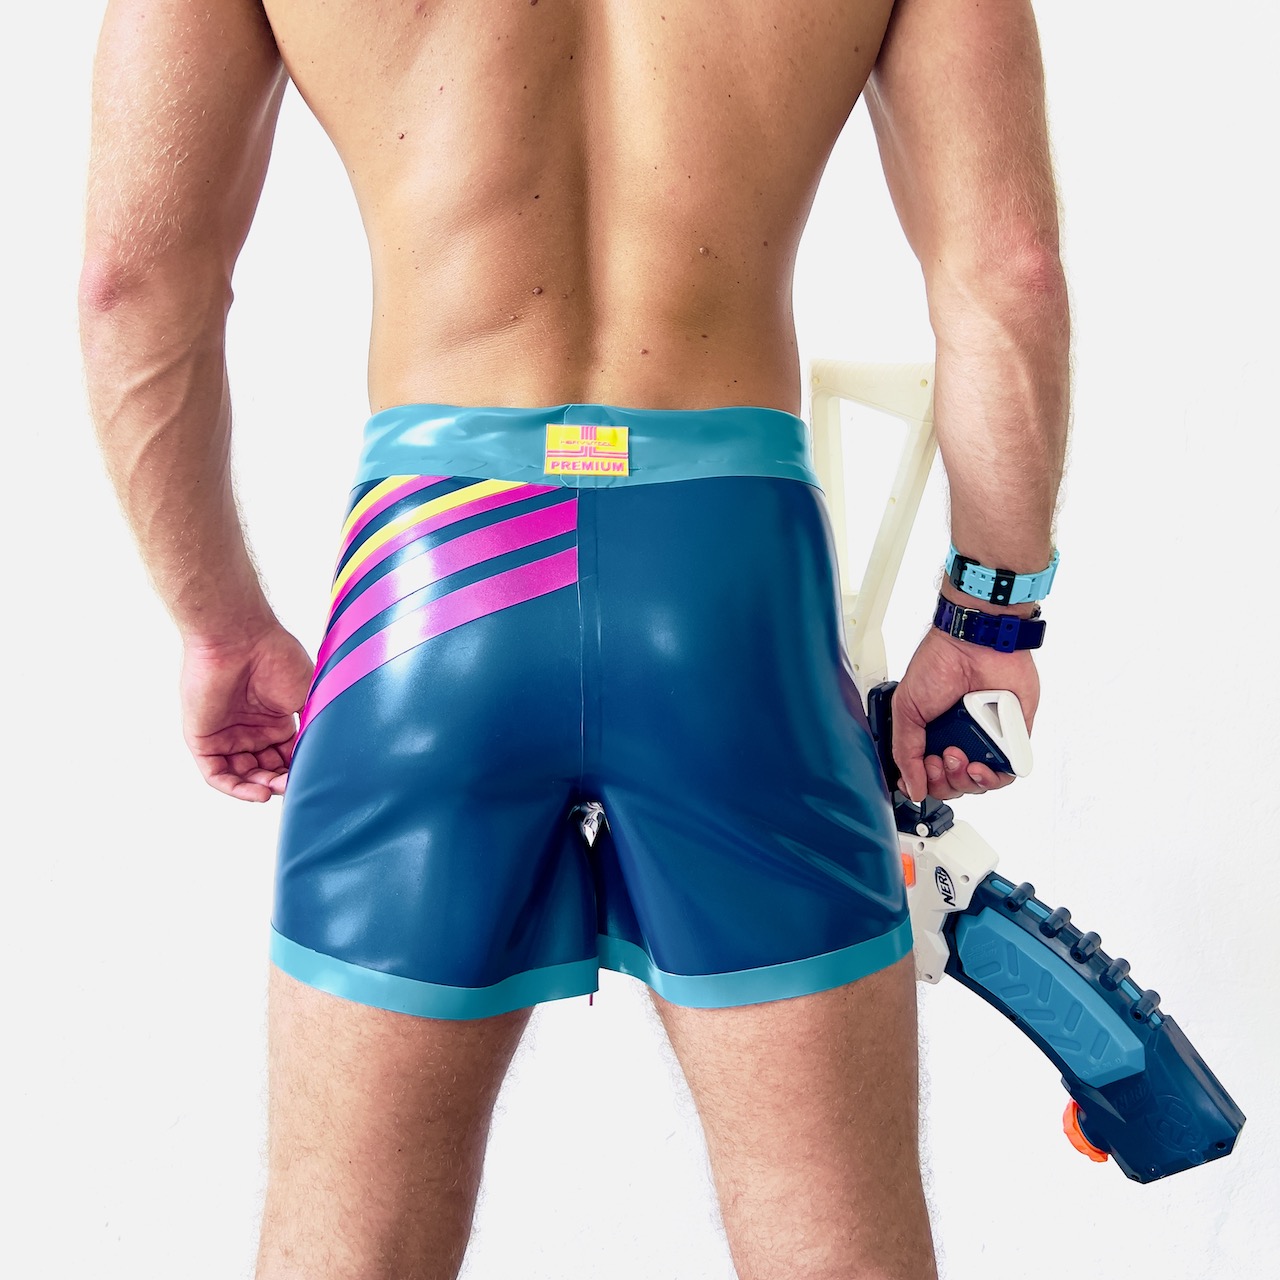 Rubber, Latex Shorts / Badehose, in metallic Blau, Türkis und Pink. Summer clubbing Fashion